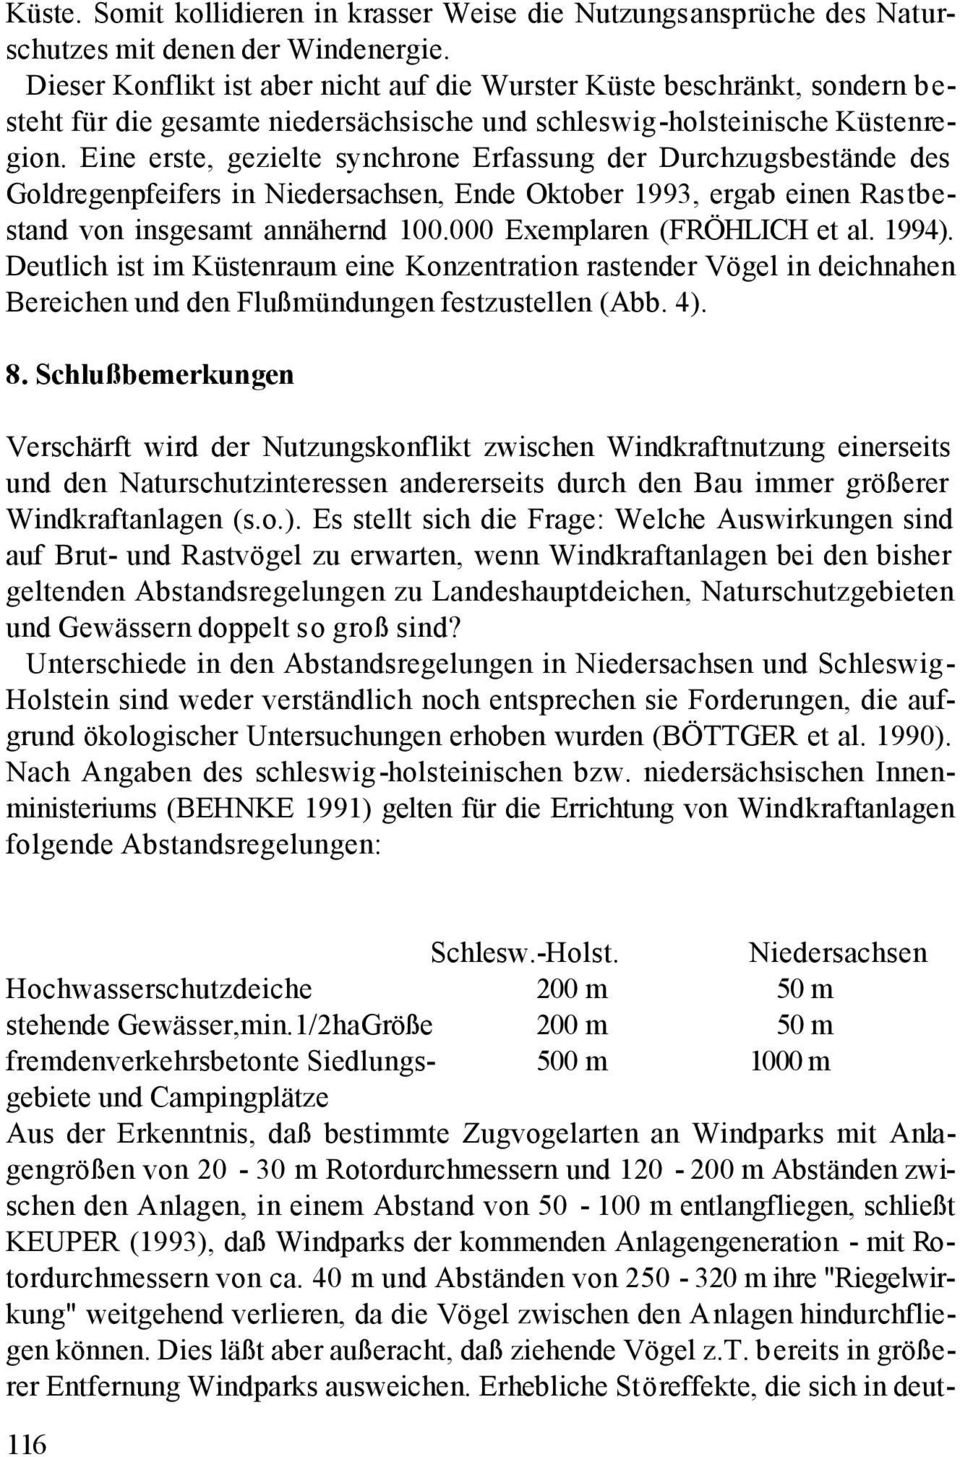 Eine erste, gezielte synchrone Erfassung der Durchzugsbestände des Goldregenpfeifers in Niedersachsen, Ende Oktober 1993, ergab einen Rastbestand von insgesamt annähernd 100.